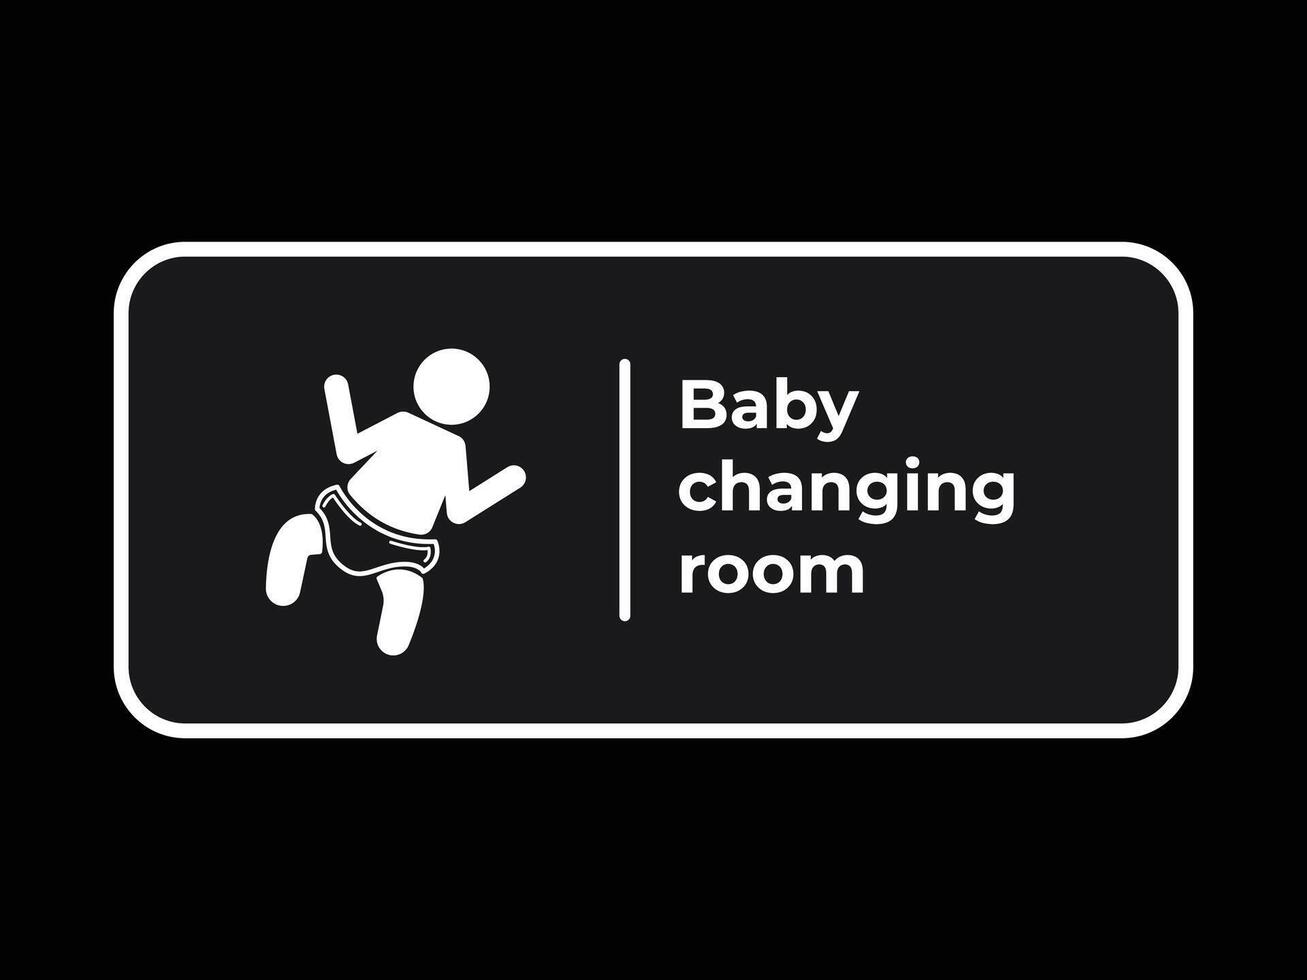 bebé cambiando habitación firmar años blanco sombra silueta ilustración aislado en cuadrado rectángulo antecedentes. sencillo plano dibujos animados estilizado dibujo. vector